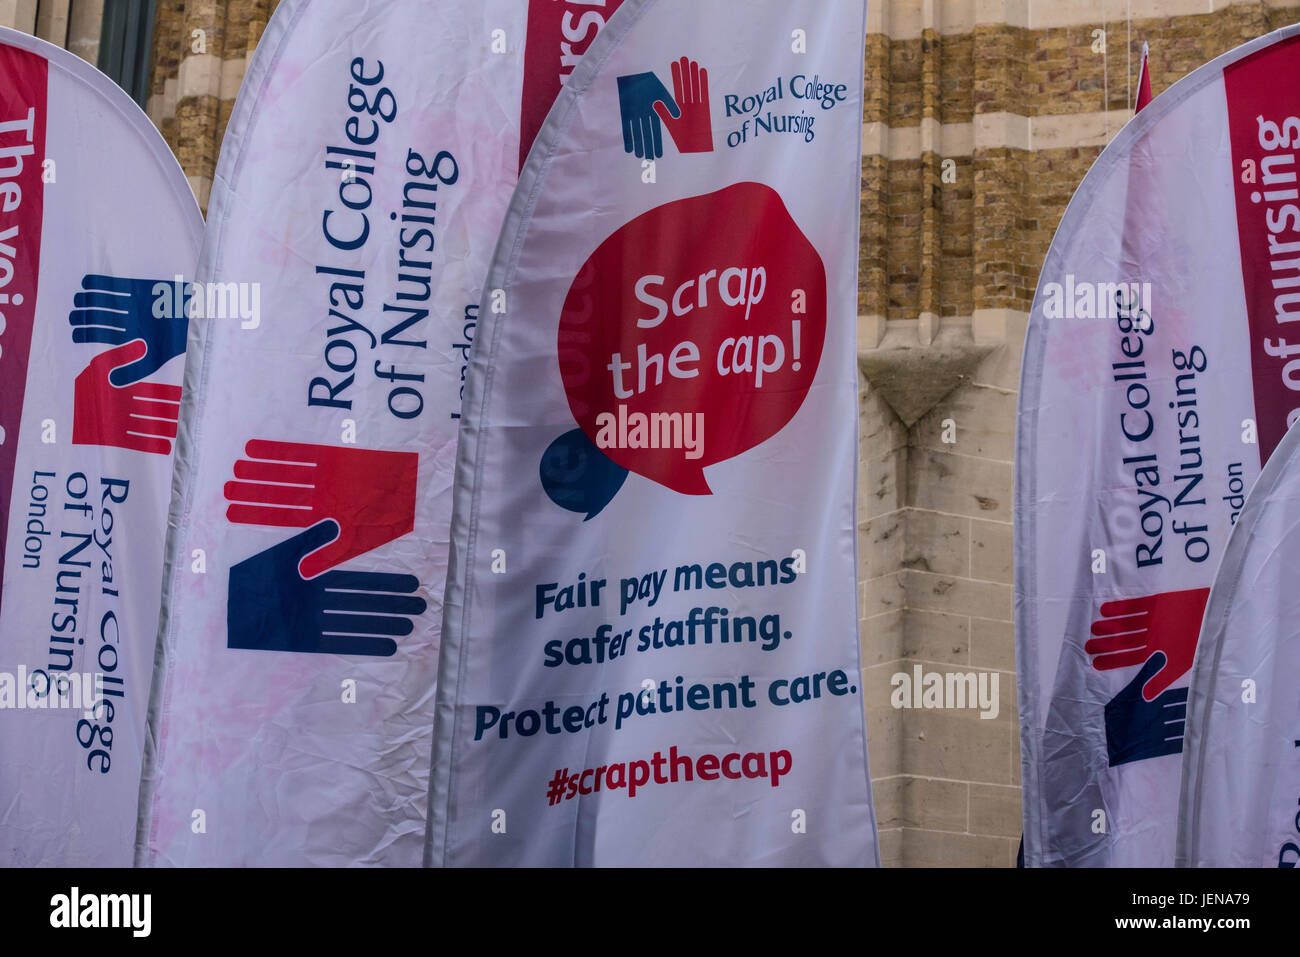 Londres, 27 de junio de 2017, el Royal College of Nursing miembros fuera del Departamento de Salud, Londres, lanzan una campaña contra el 1% paga la tapa con una protesta por Frontline enfermeras Crédito: Ian Davidson/Alamy Live News Foto de stock